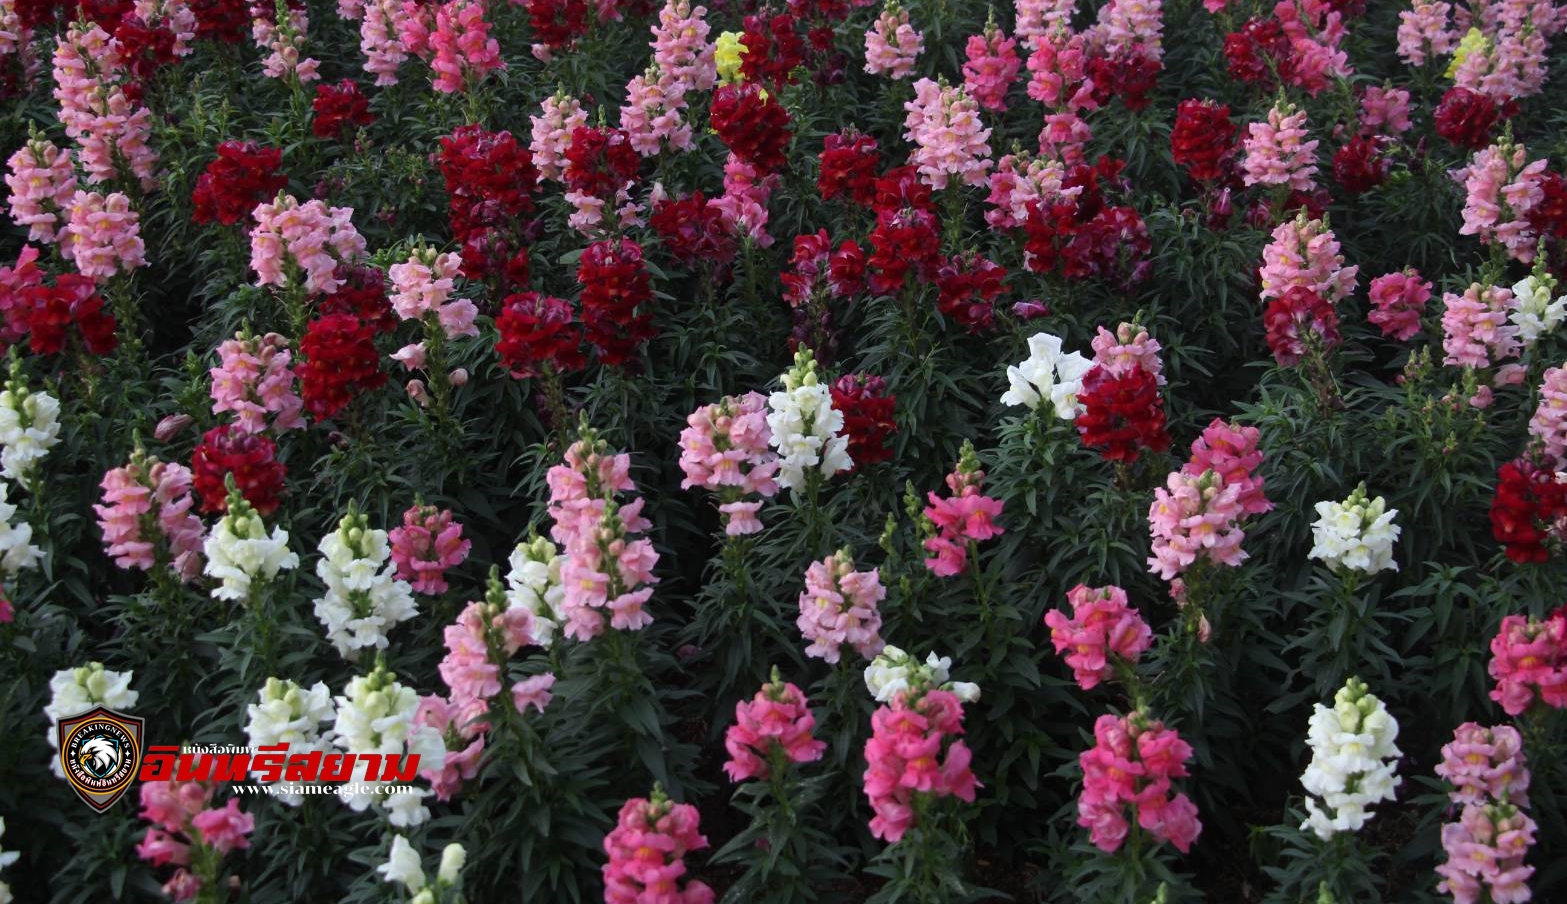 เชียงใหม่-เทศบาลนครฯเริ่มเปิดสวนสาธารณะหนองบวกหาด ให้นักท่องเที่ยวเข้าชมงานมหกรรมไม้ดอกไม้ประดับ ครั้งที่ 47